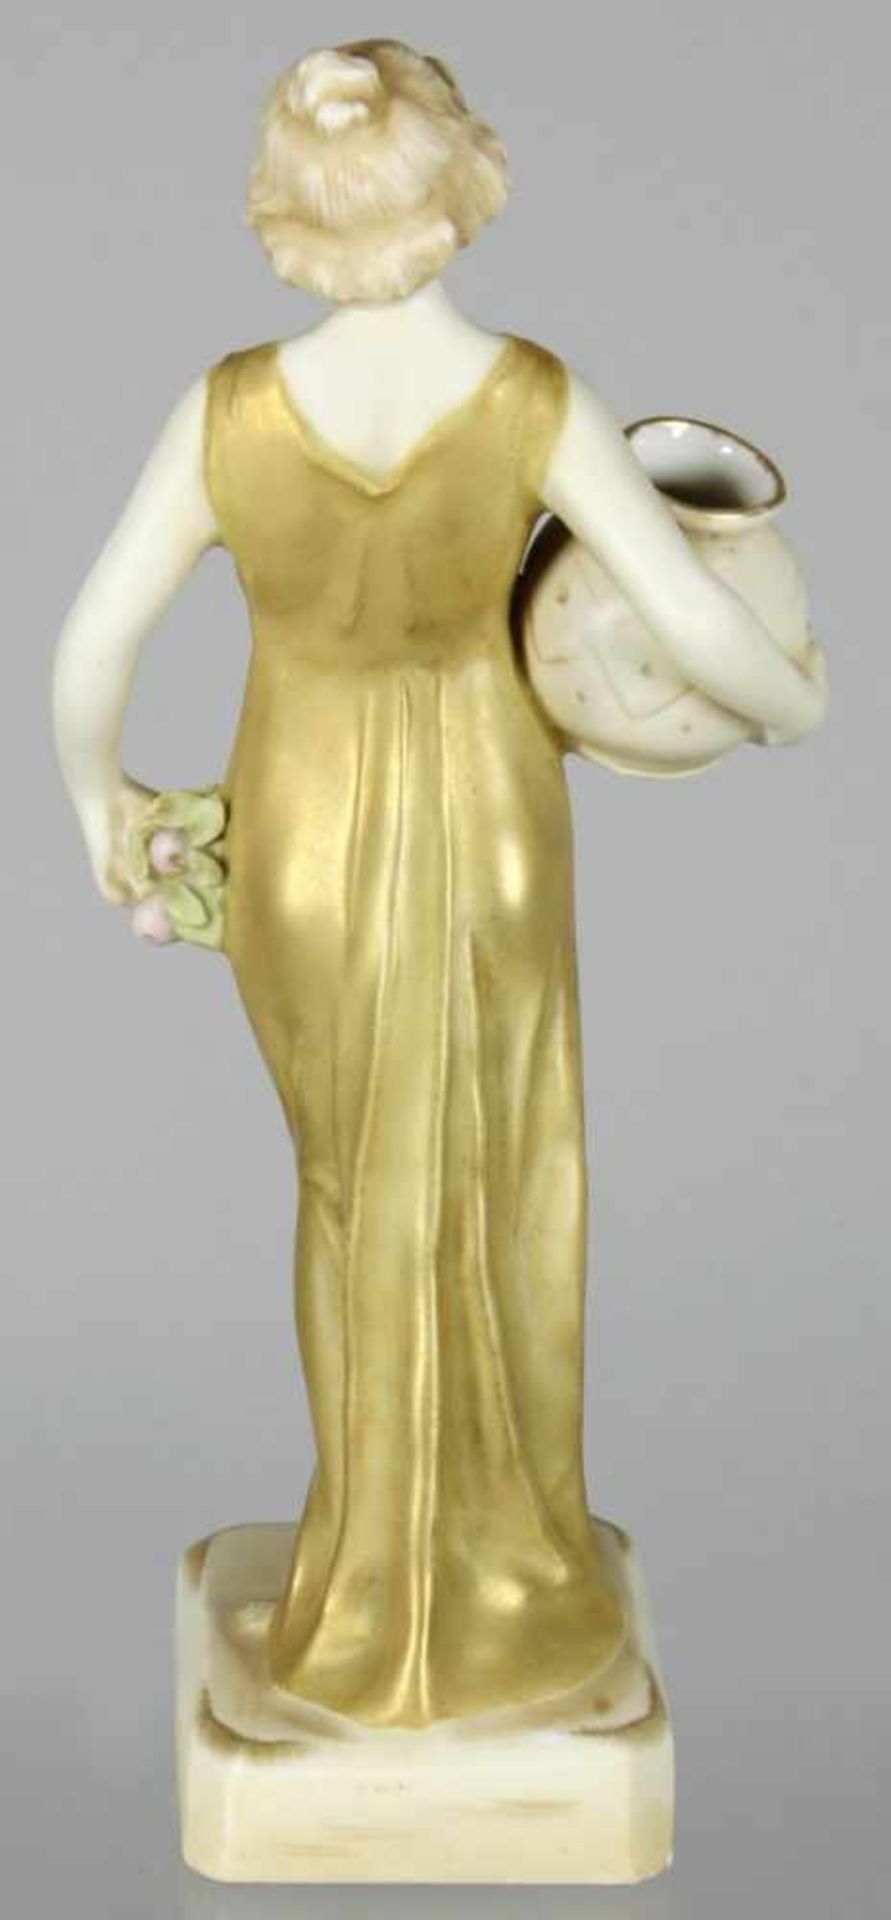 Keramik-Figur, "Antikisierende Dame", Ernst Wahliss, Royal Vienna, um 1910, Mod.nr.: 1077,auf - Bild 2 aus 4